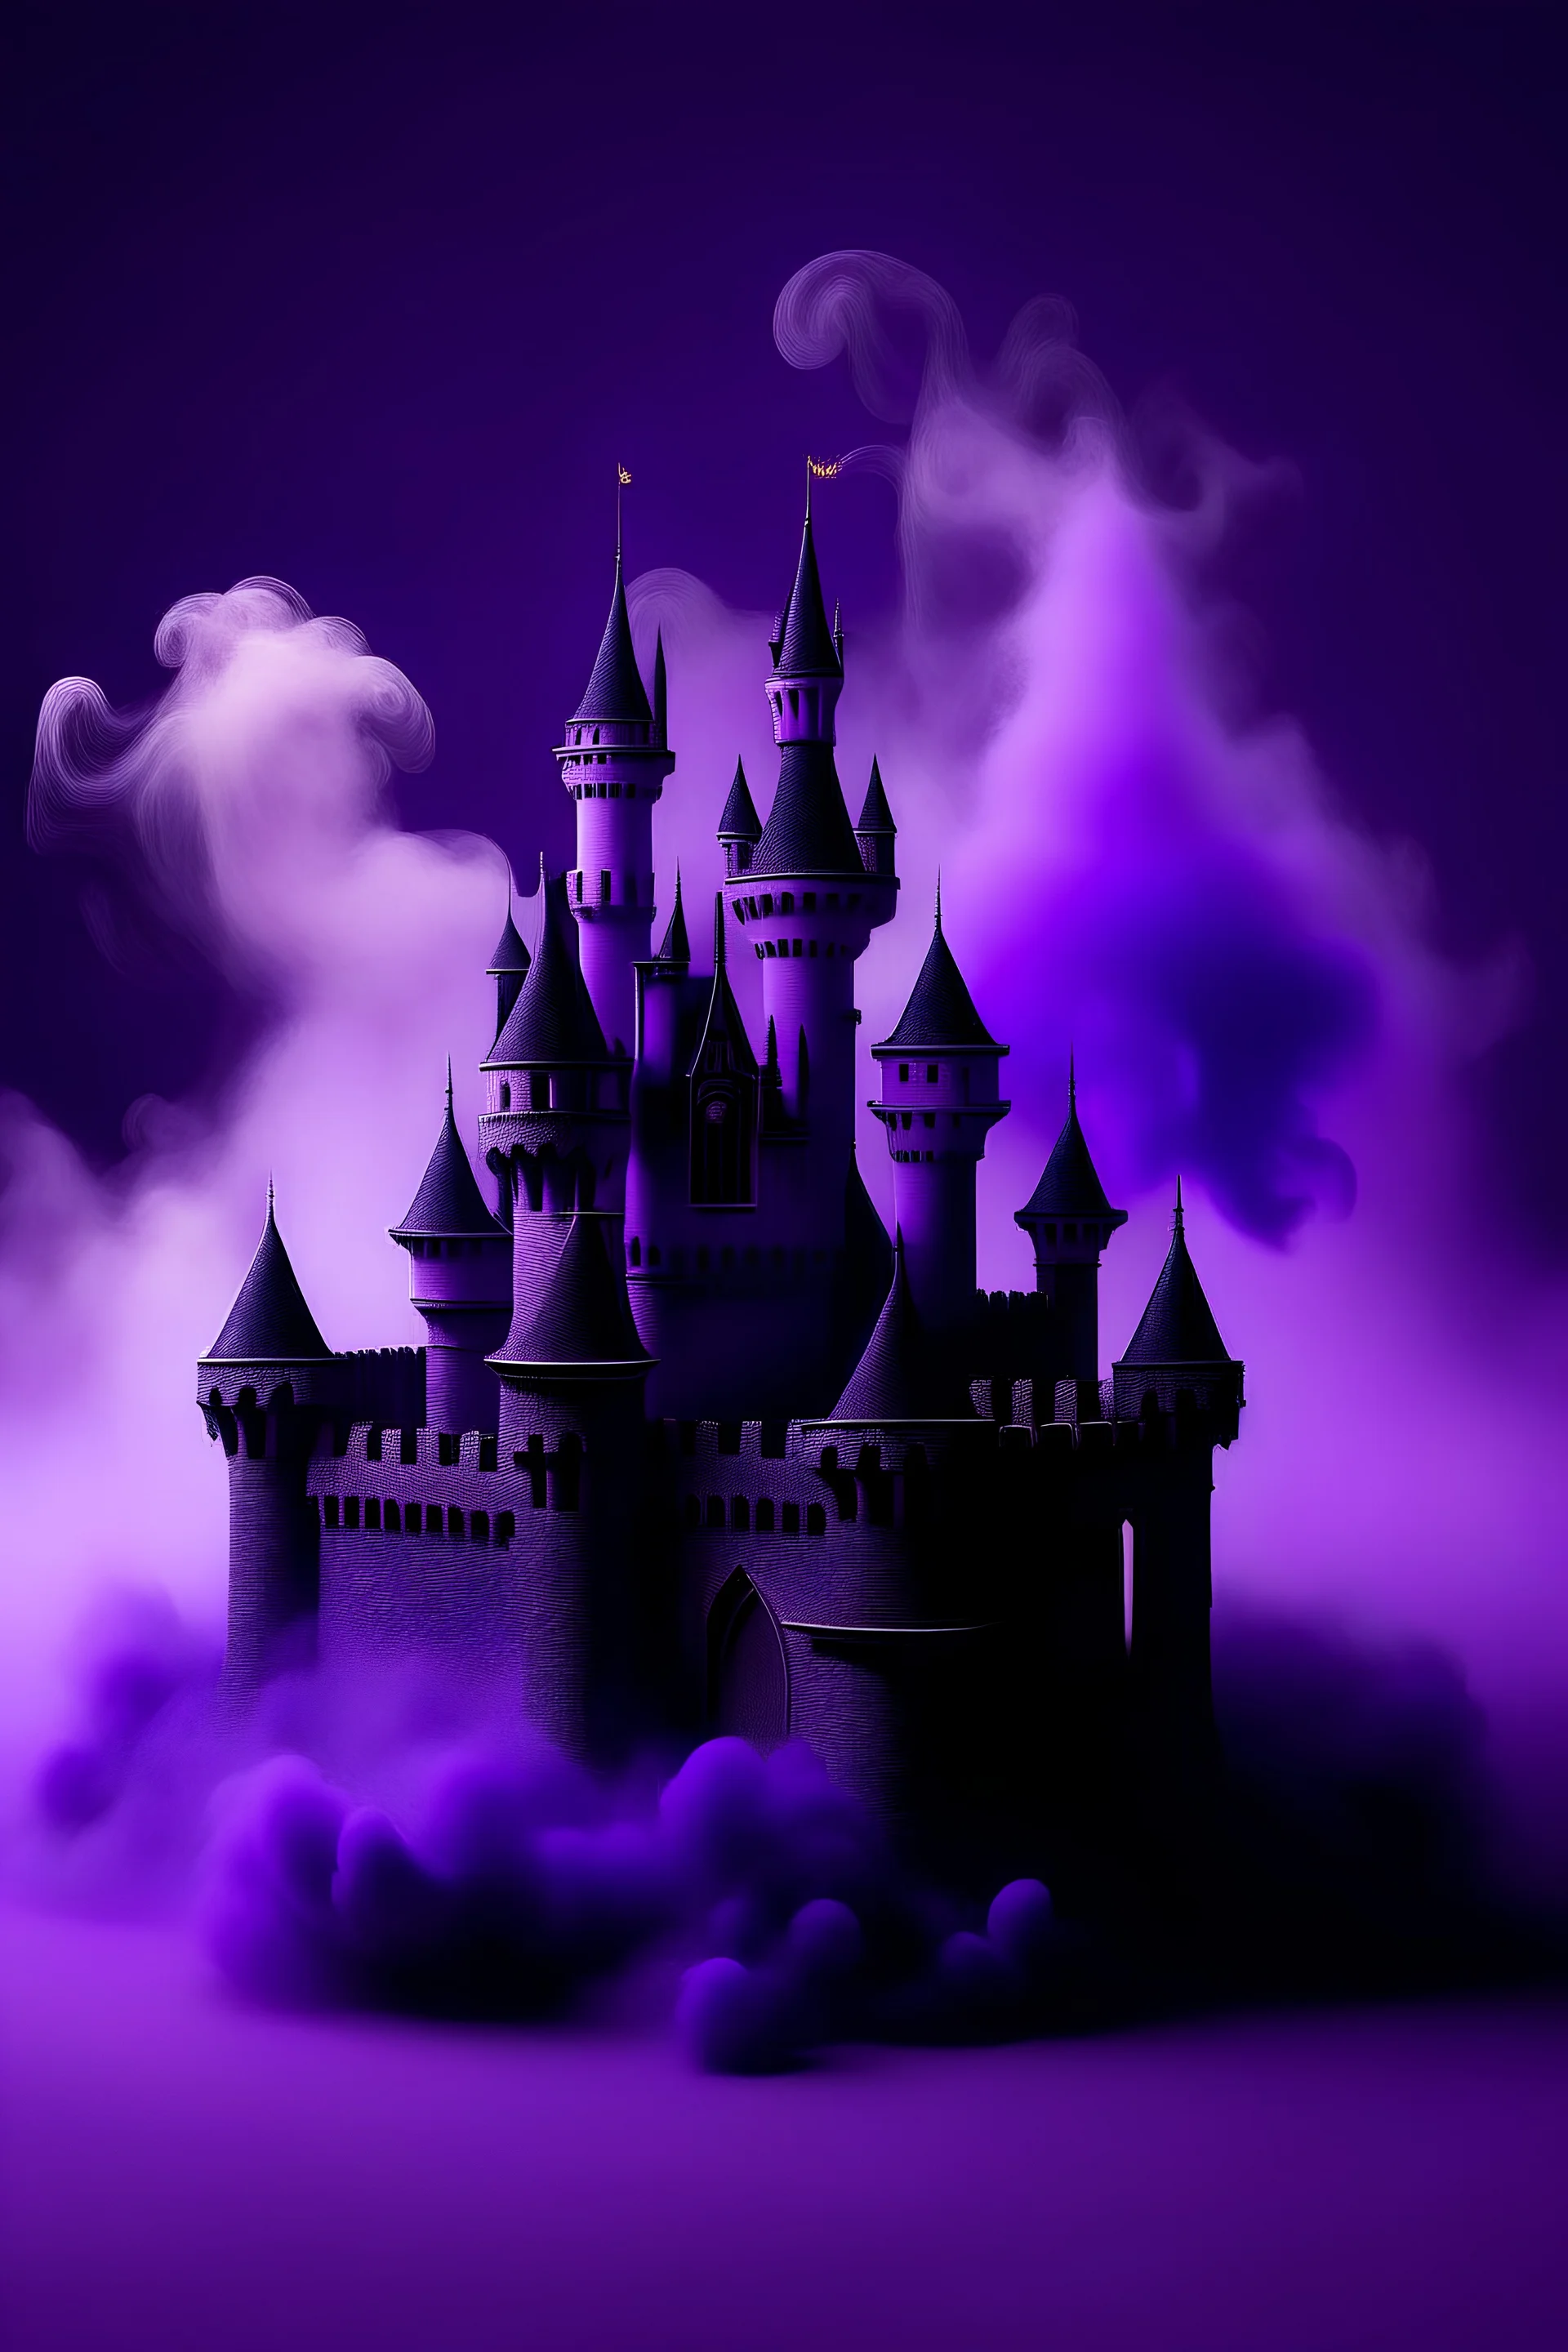 64x64 pixel castle with purple smoke